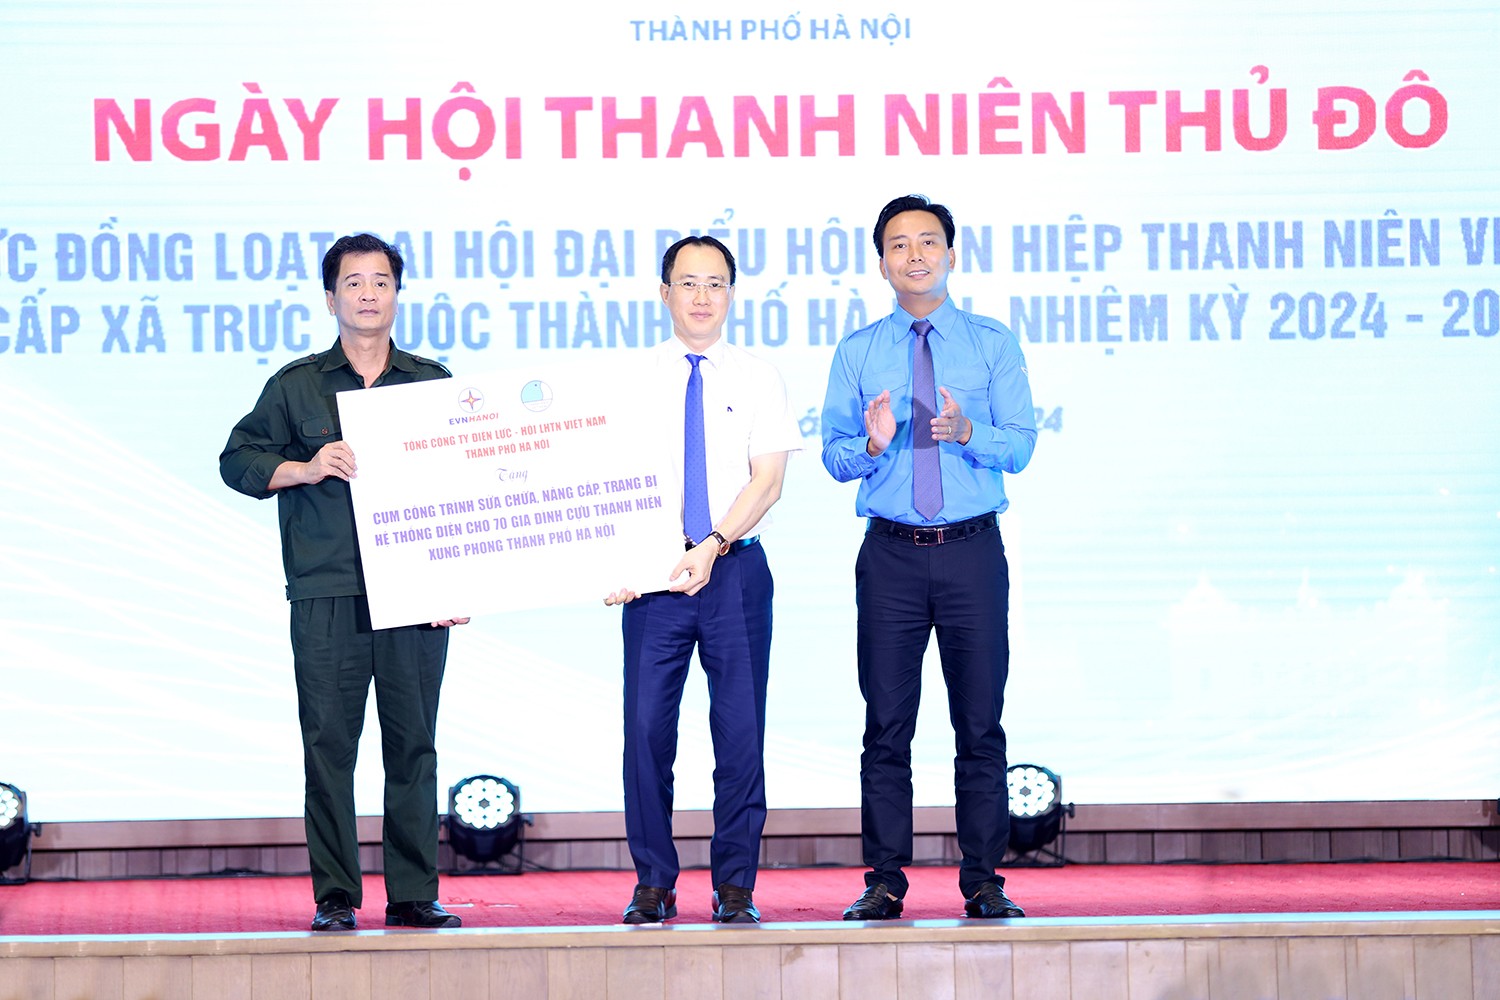 Lãnh đạo Hội LHTN Việt Nam thành phố Hà Nội trao Cụm công trình thanh niên sữa chữa, nâng cấp hệ thống điện cho cựu thanh niên xung phong